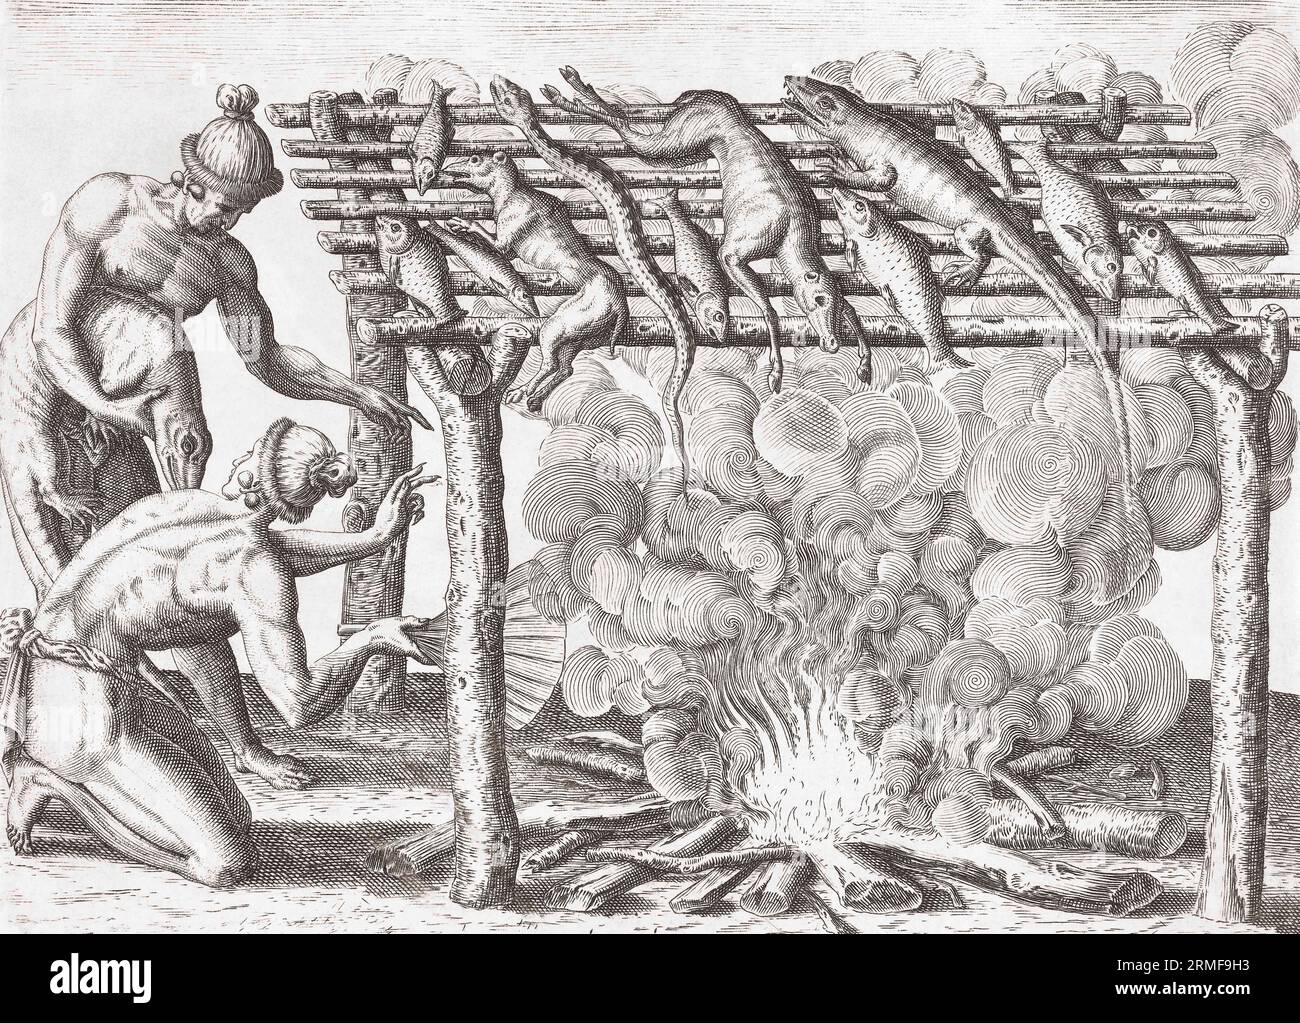 Dos hombres nativos americanos fuman su captura de animales y reptiles autóctonos. Después de una obra de finales del siglo XVI de Theodor de Bry. Foto de stock